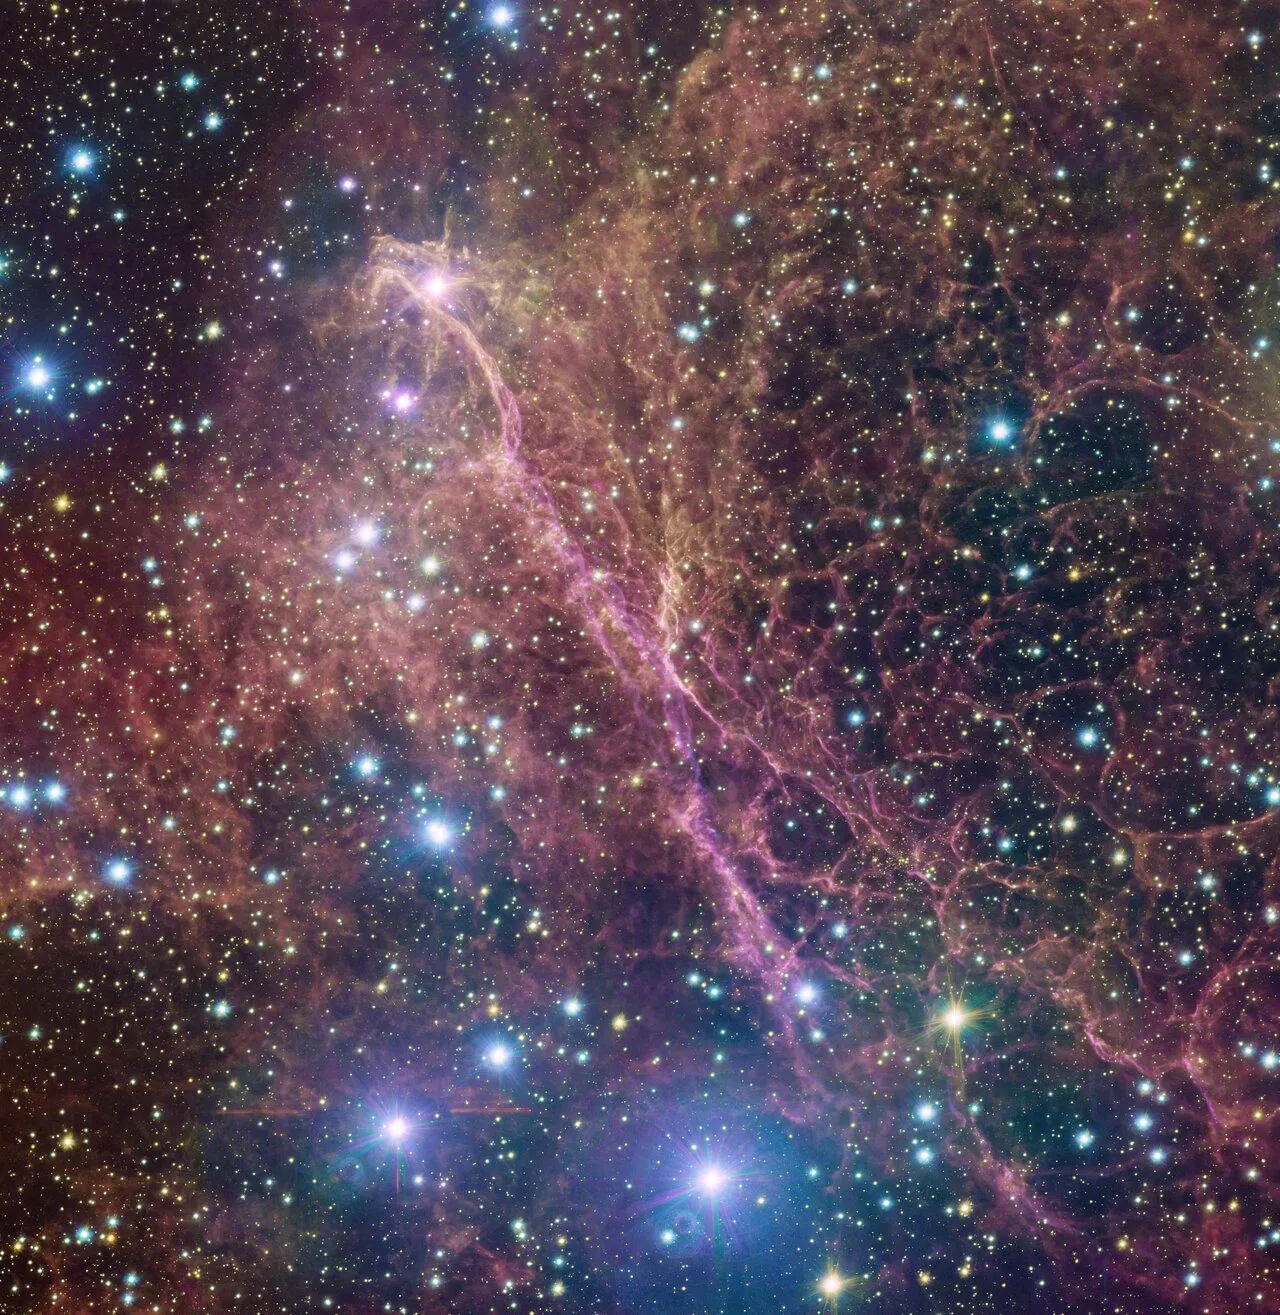 Dies ist ein kleiner Fleck des Vela-Supernova-Überrests, die verschlungenen Überreste der Explosion eines massereichen Sterns vor 11.000 Jahren